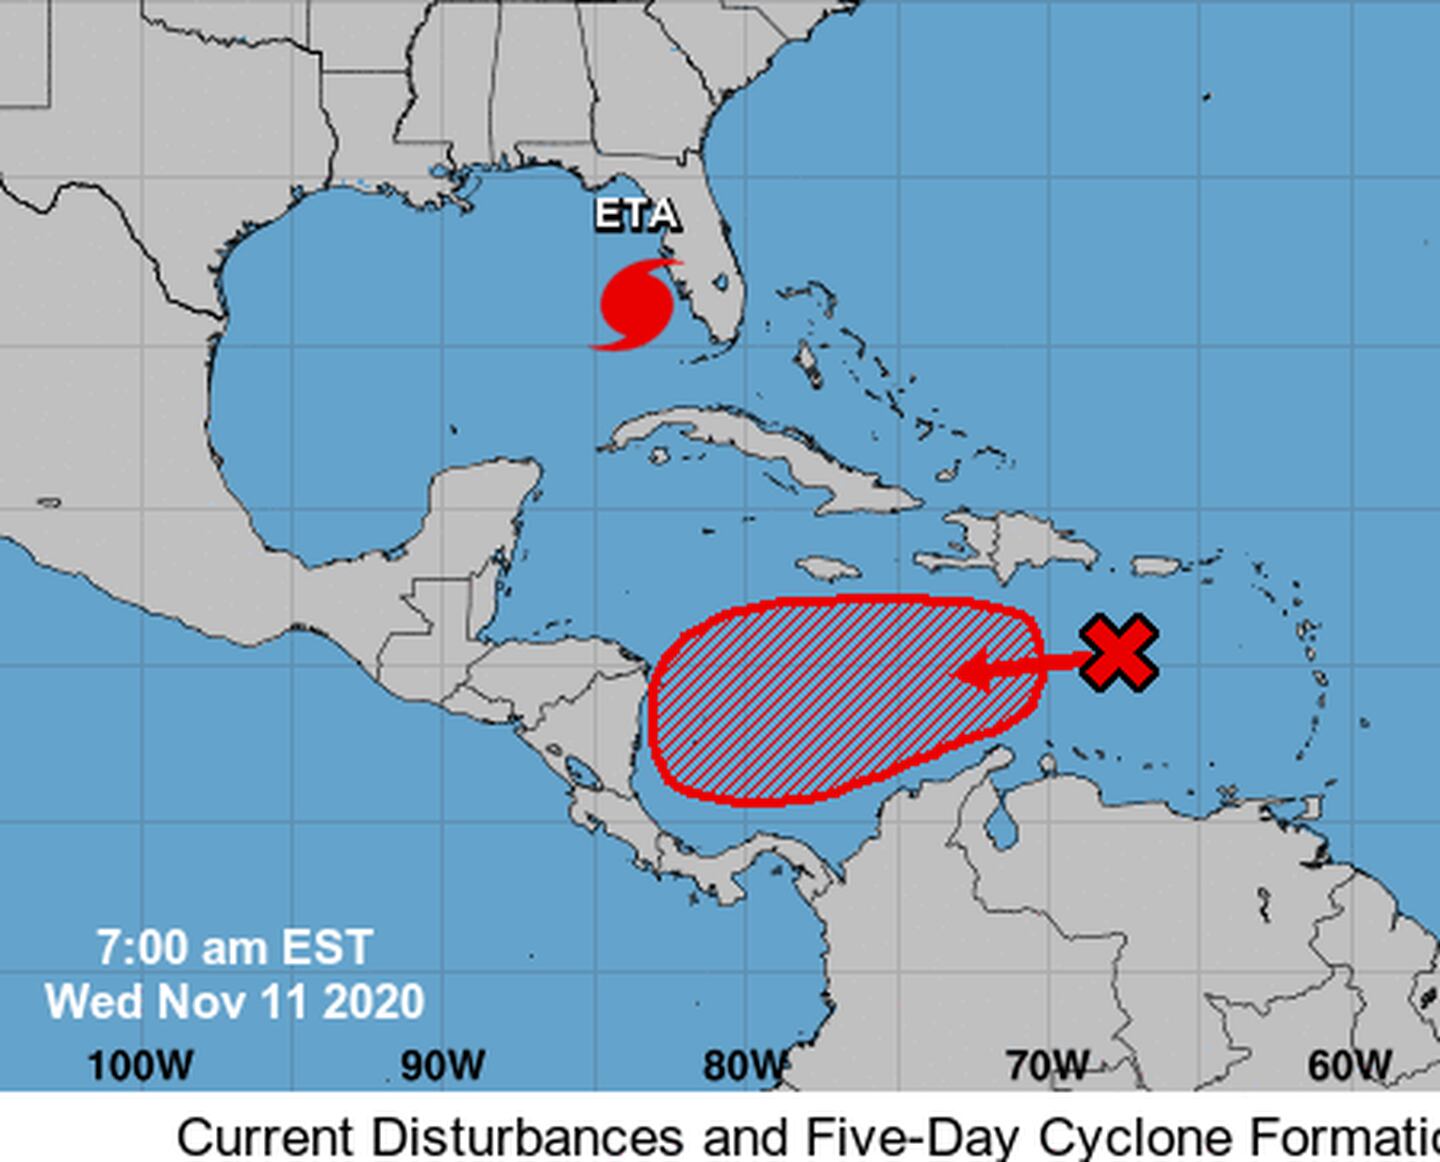 La proyección del Centro Nacional de Huracanes para dentro de cinco días, otorga al disturbio una trayectoria muy similar a la que tuvo el huracán Eta. Imagen: Centro Nacional de Huracanes.